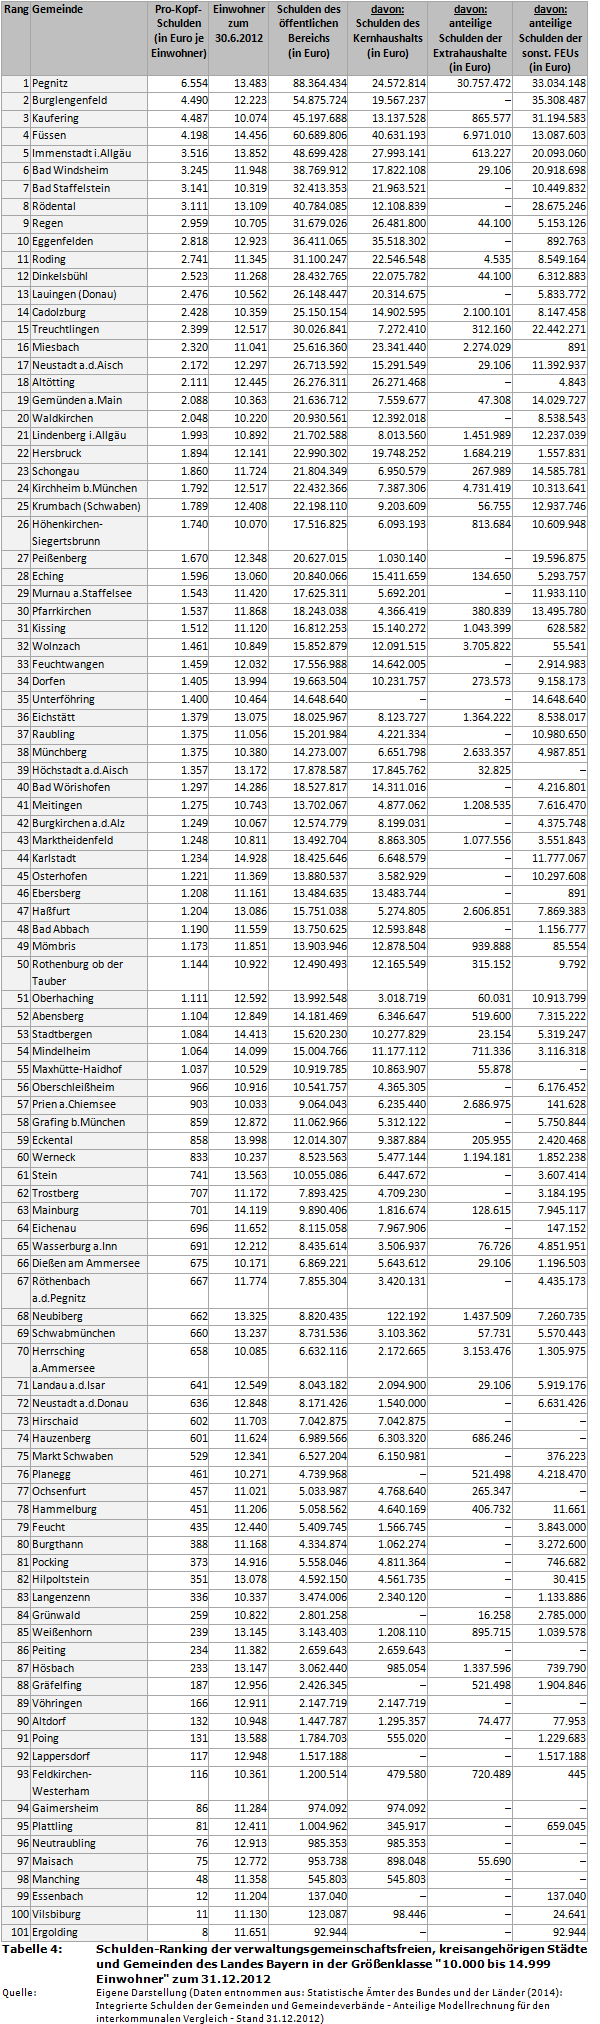 Schulden-Ranking der verwaltungsgemeinschaftsfreien, kreisangehörigen Städte und Gemeinden des Landes Bayern in der Größenklasse '10.000 bis 14.999 Einwohner' zum 31.12.2012